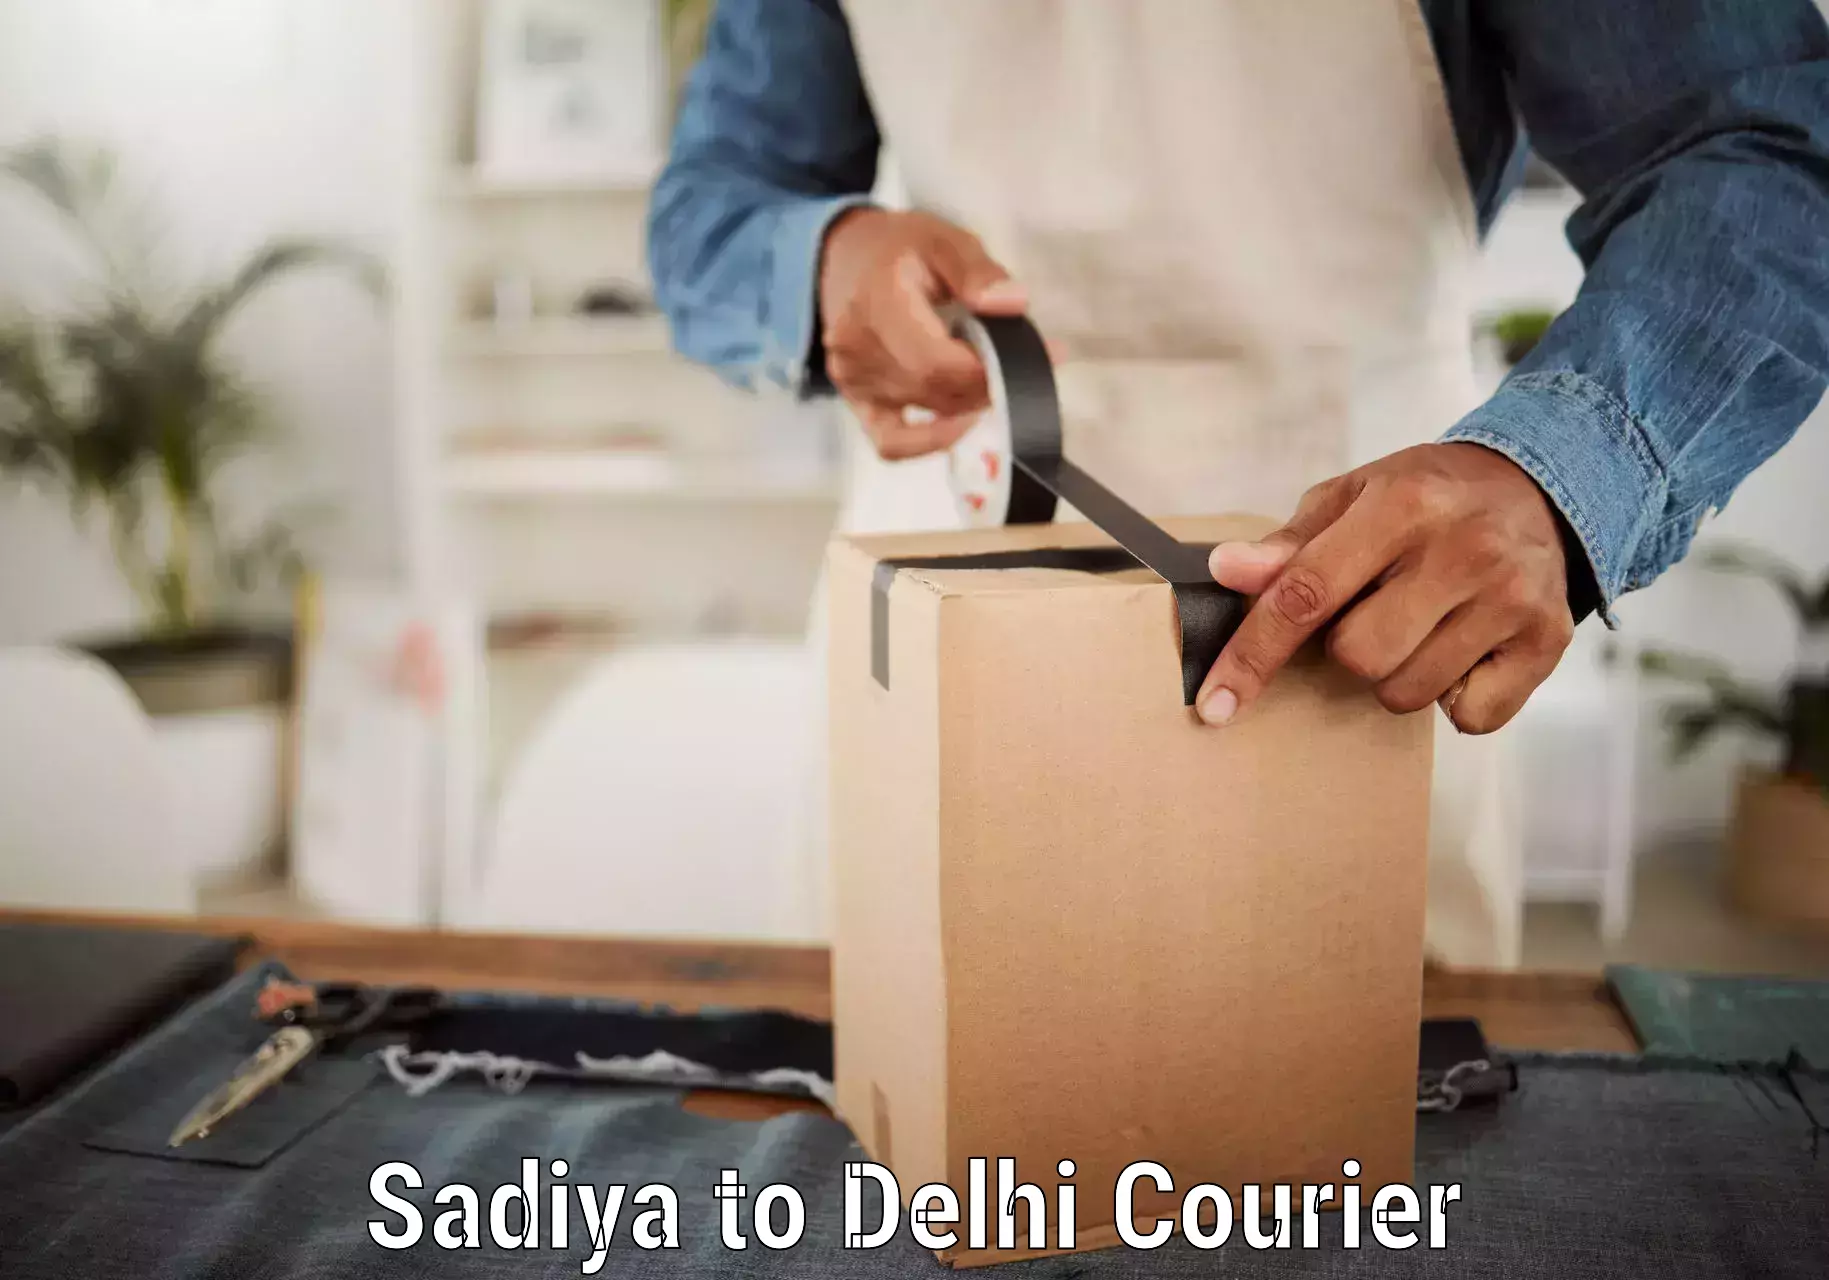 High-capacity parcel service Sadiya to Delhi